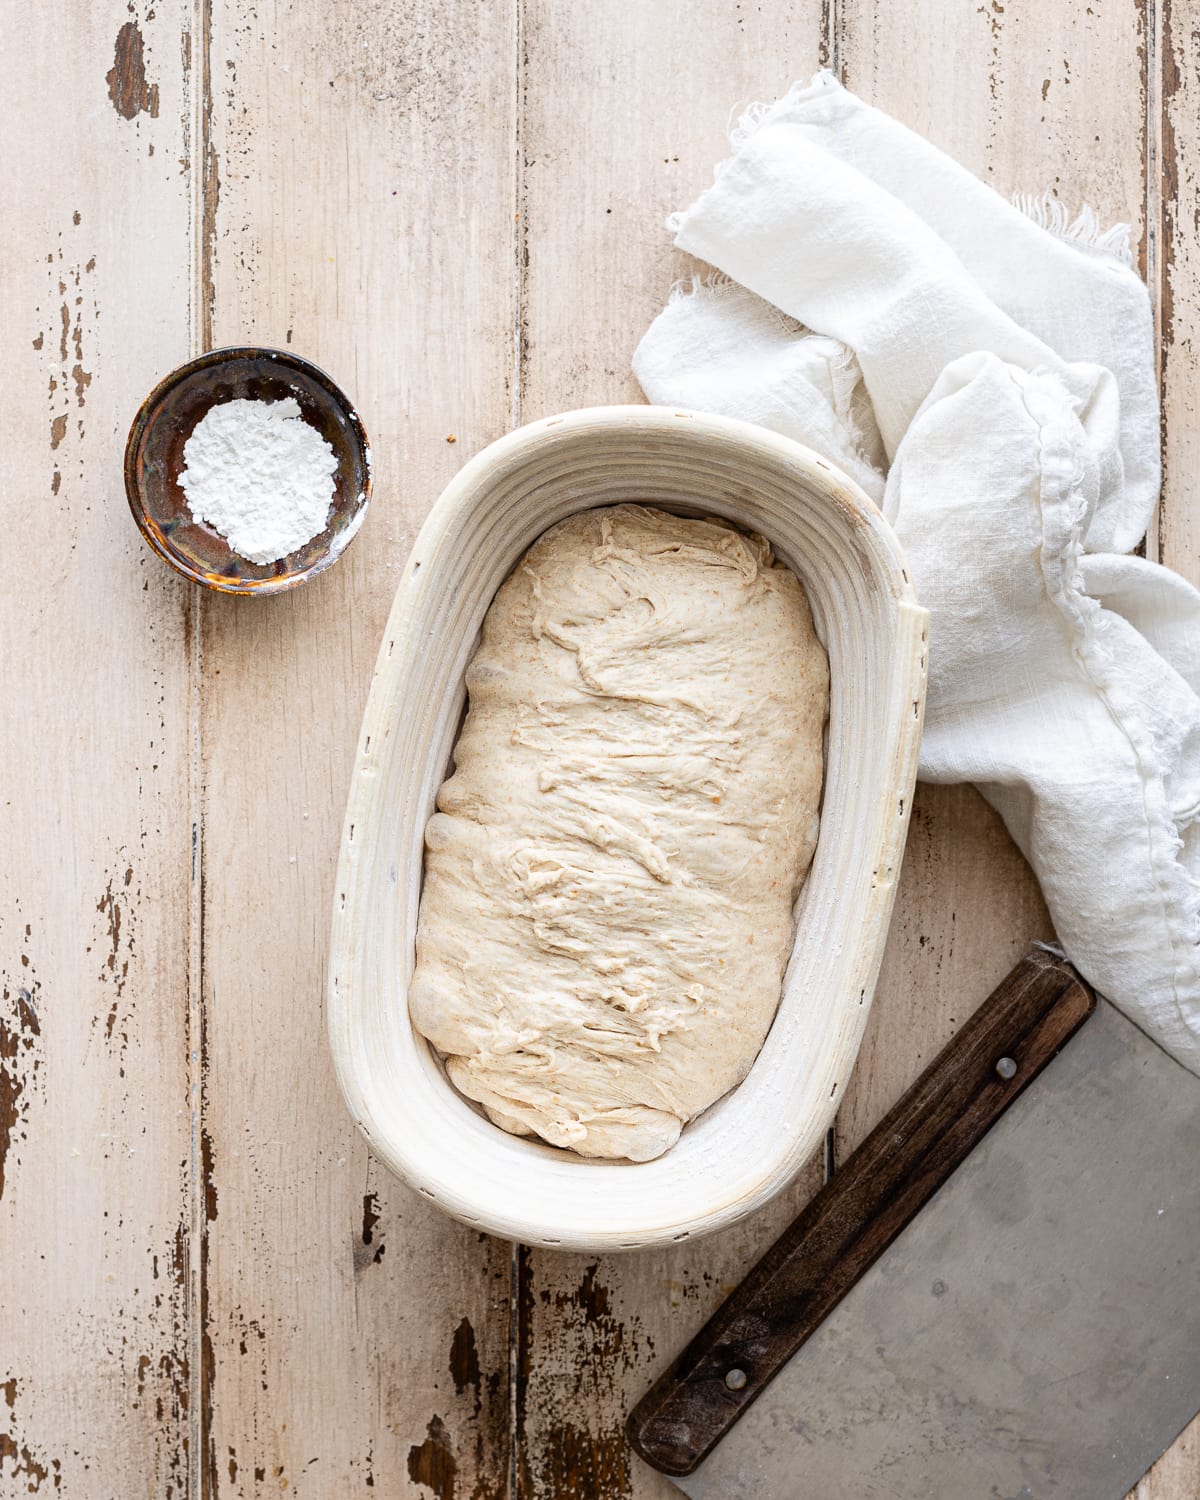 shaped dough inside a oval banneton.